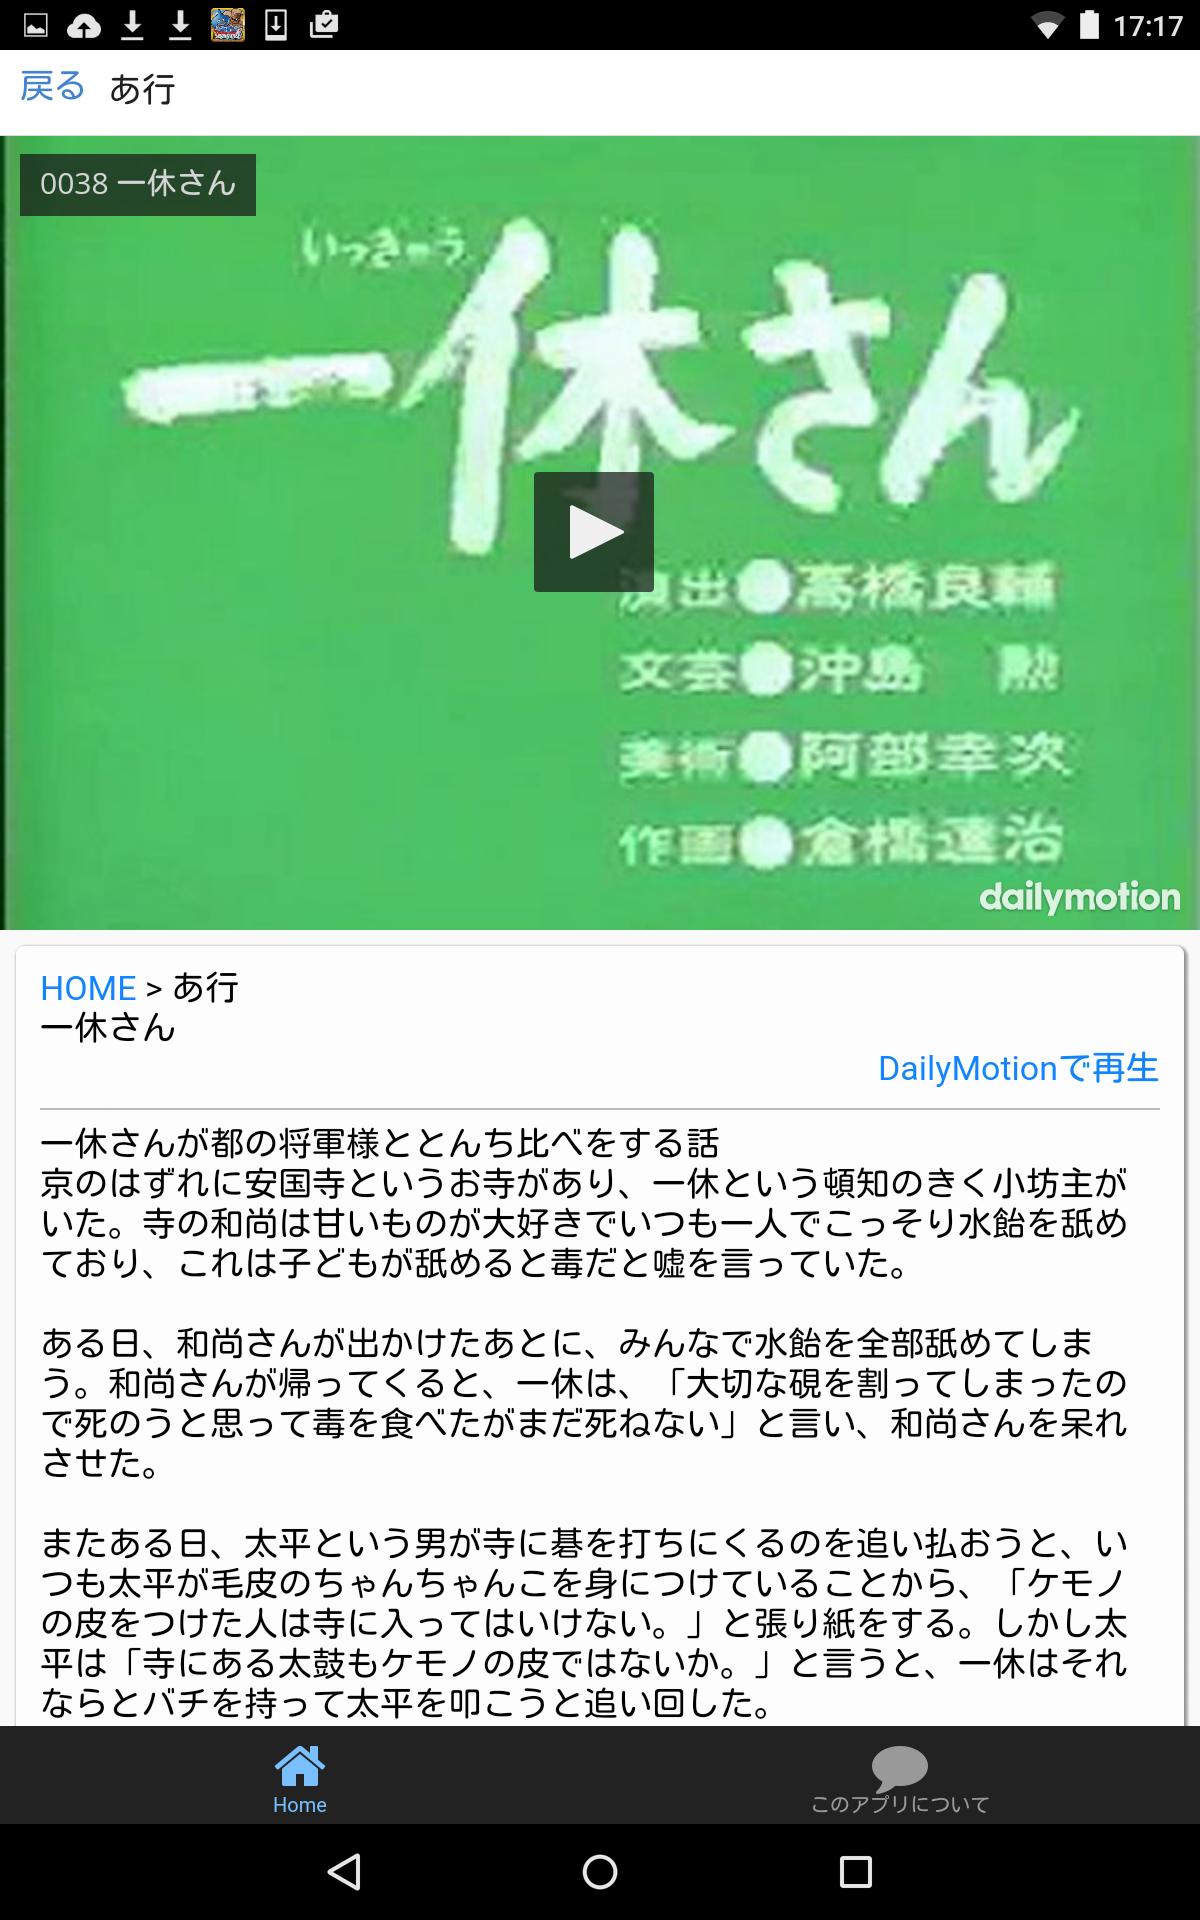 まんが日本昔話for動画 For Android Apk Download